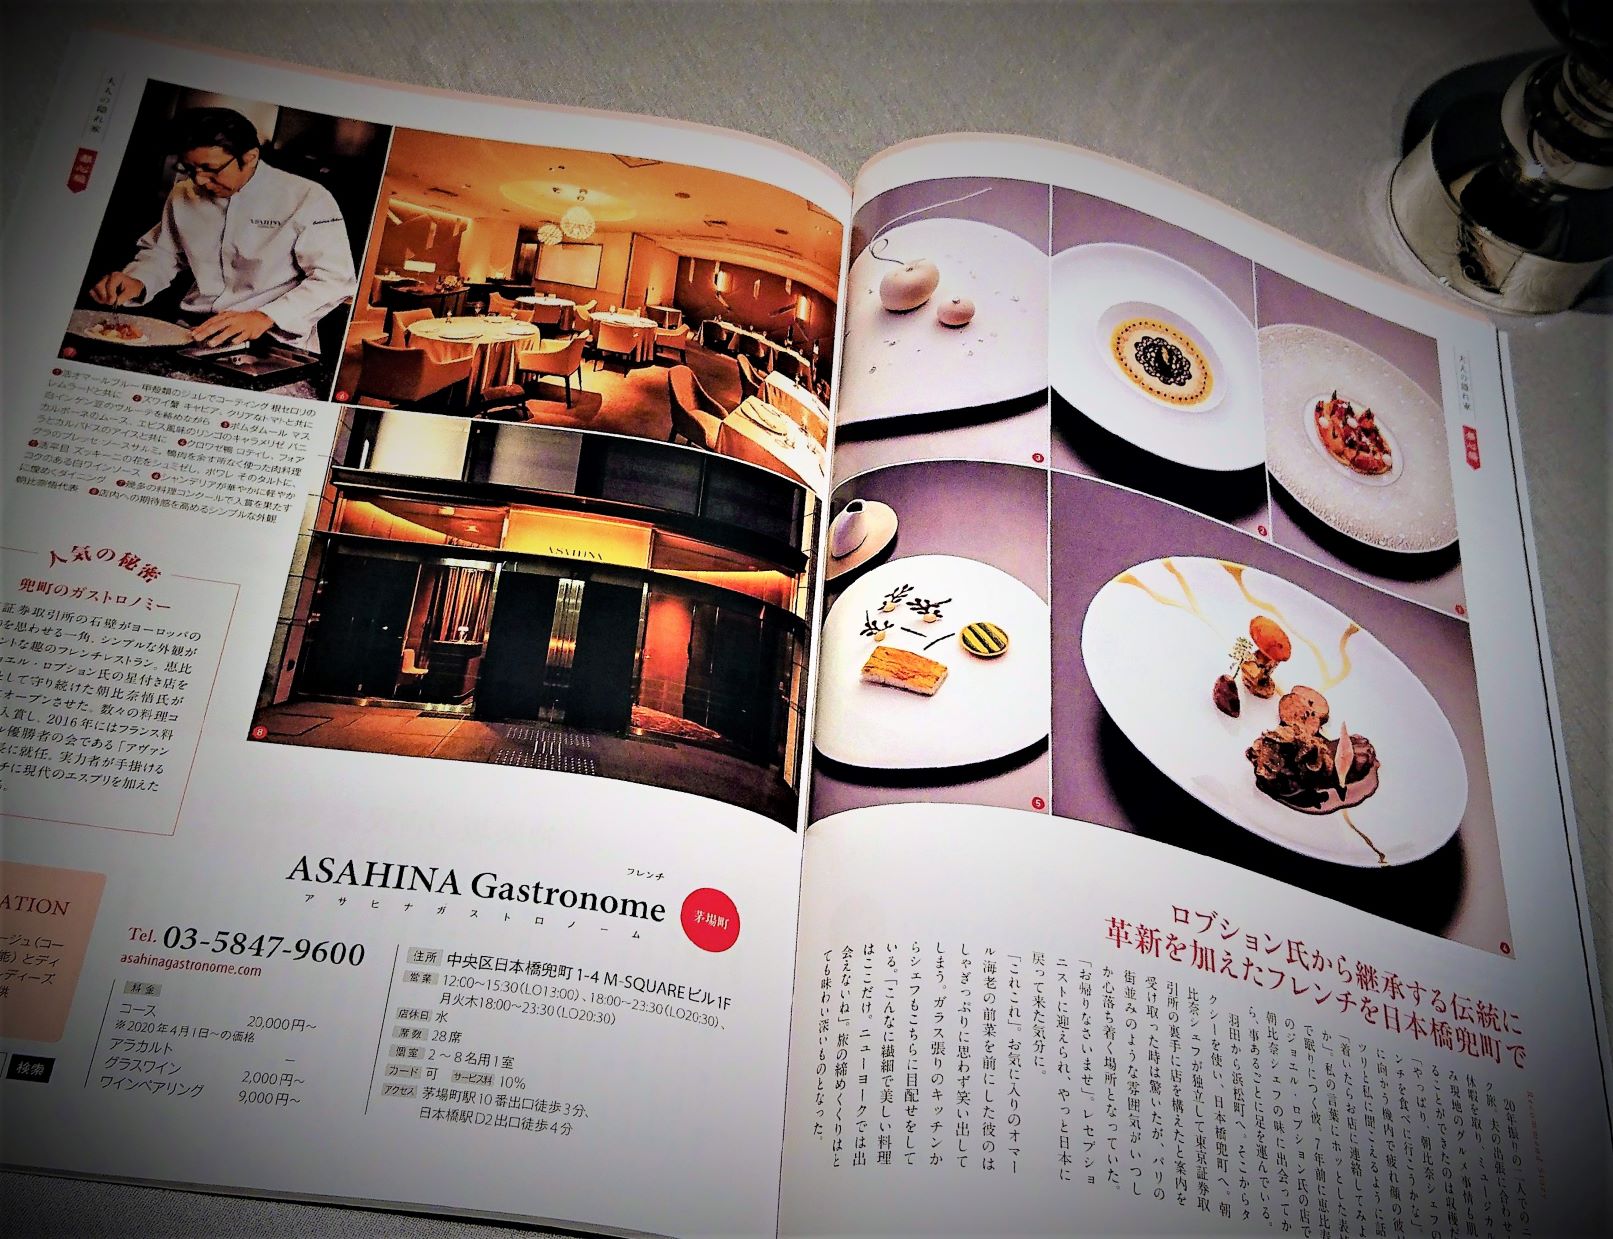 メディア掲載情報 東京 大人の隠れ家レストラン100選 年版